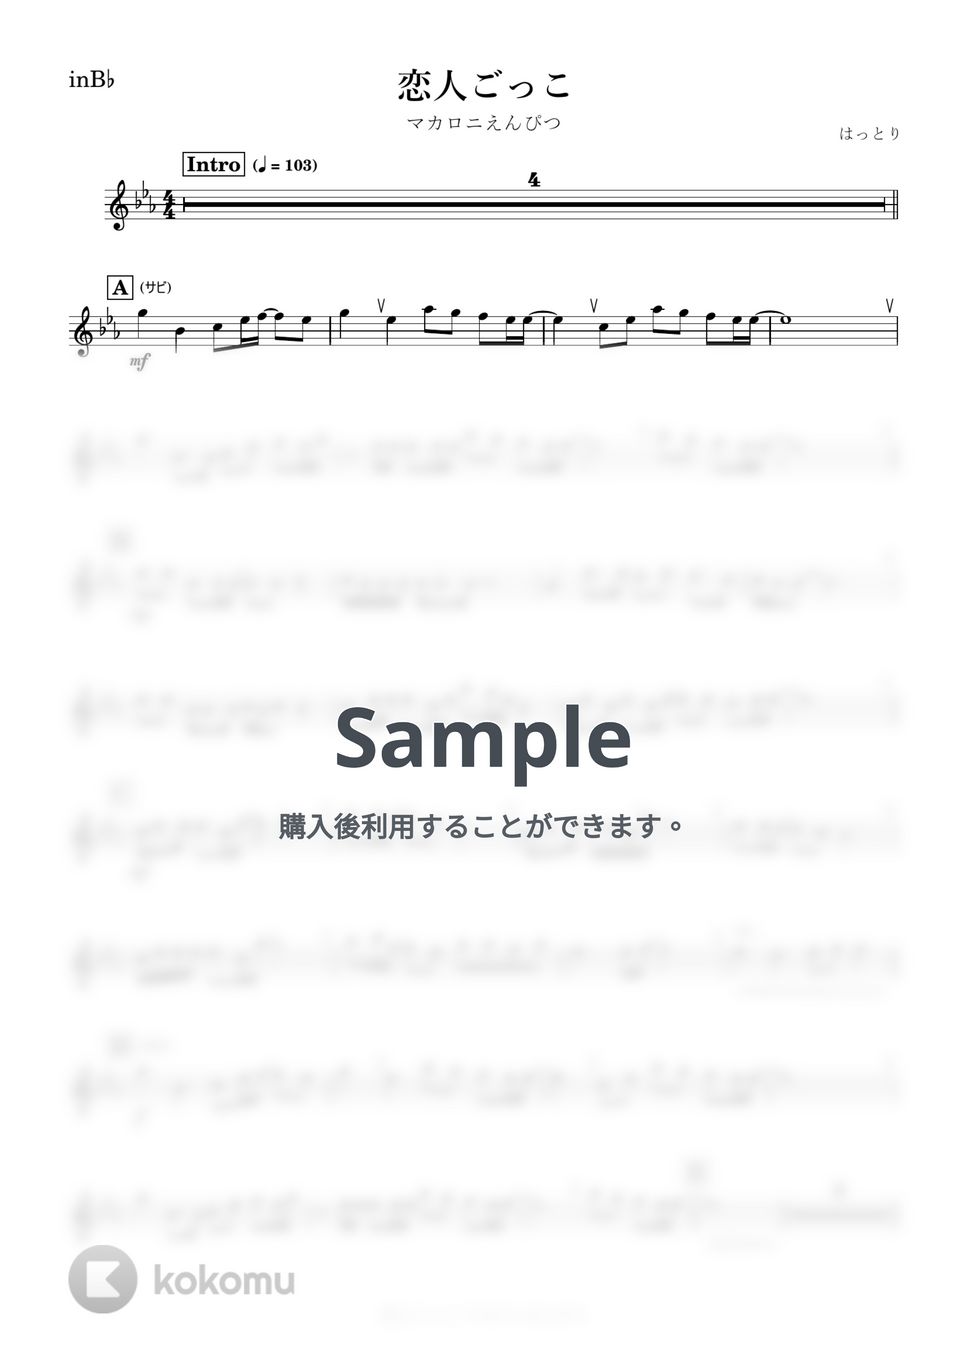 マカロニえんぴつ - 恋人ごっこ (B♭) by kanamusic